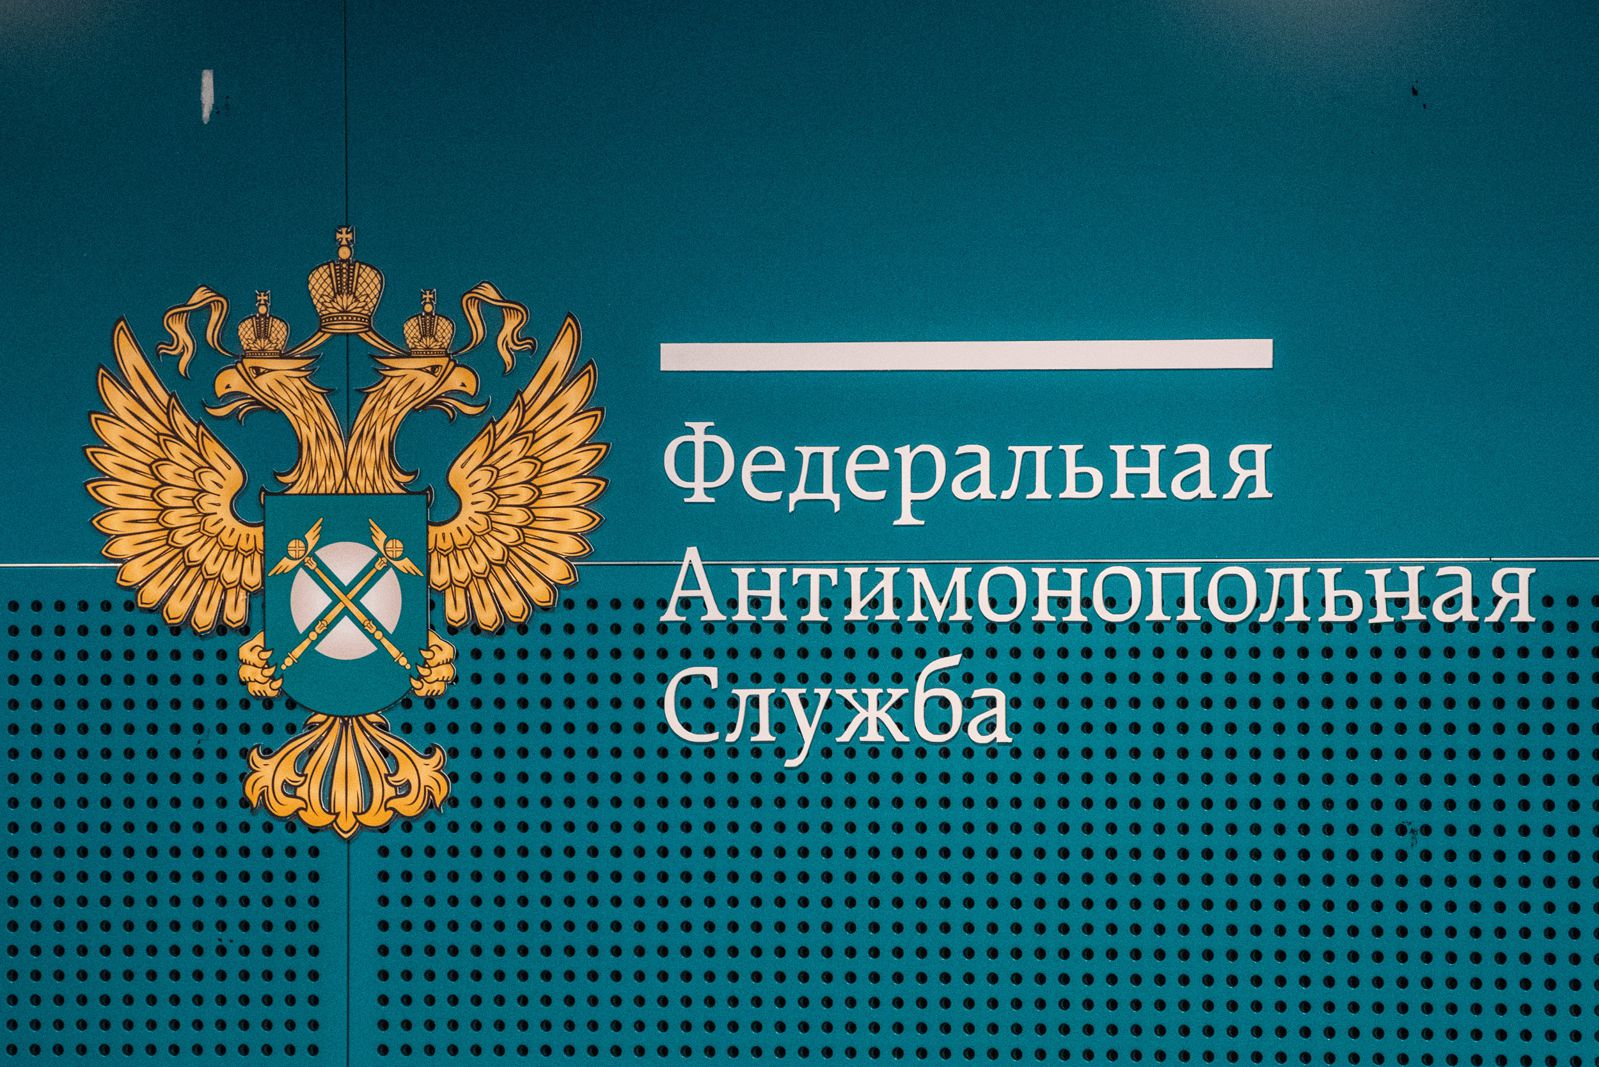 Банку «Русский стандарт» в Перми грозит штраф до 500 тысяч рублей за рекламные звонки